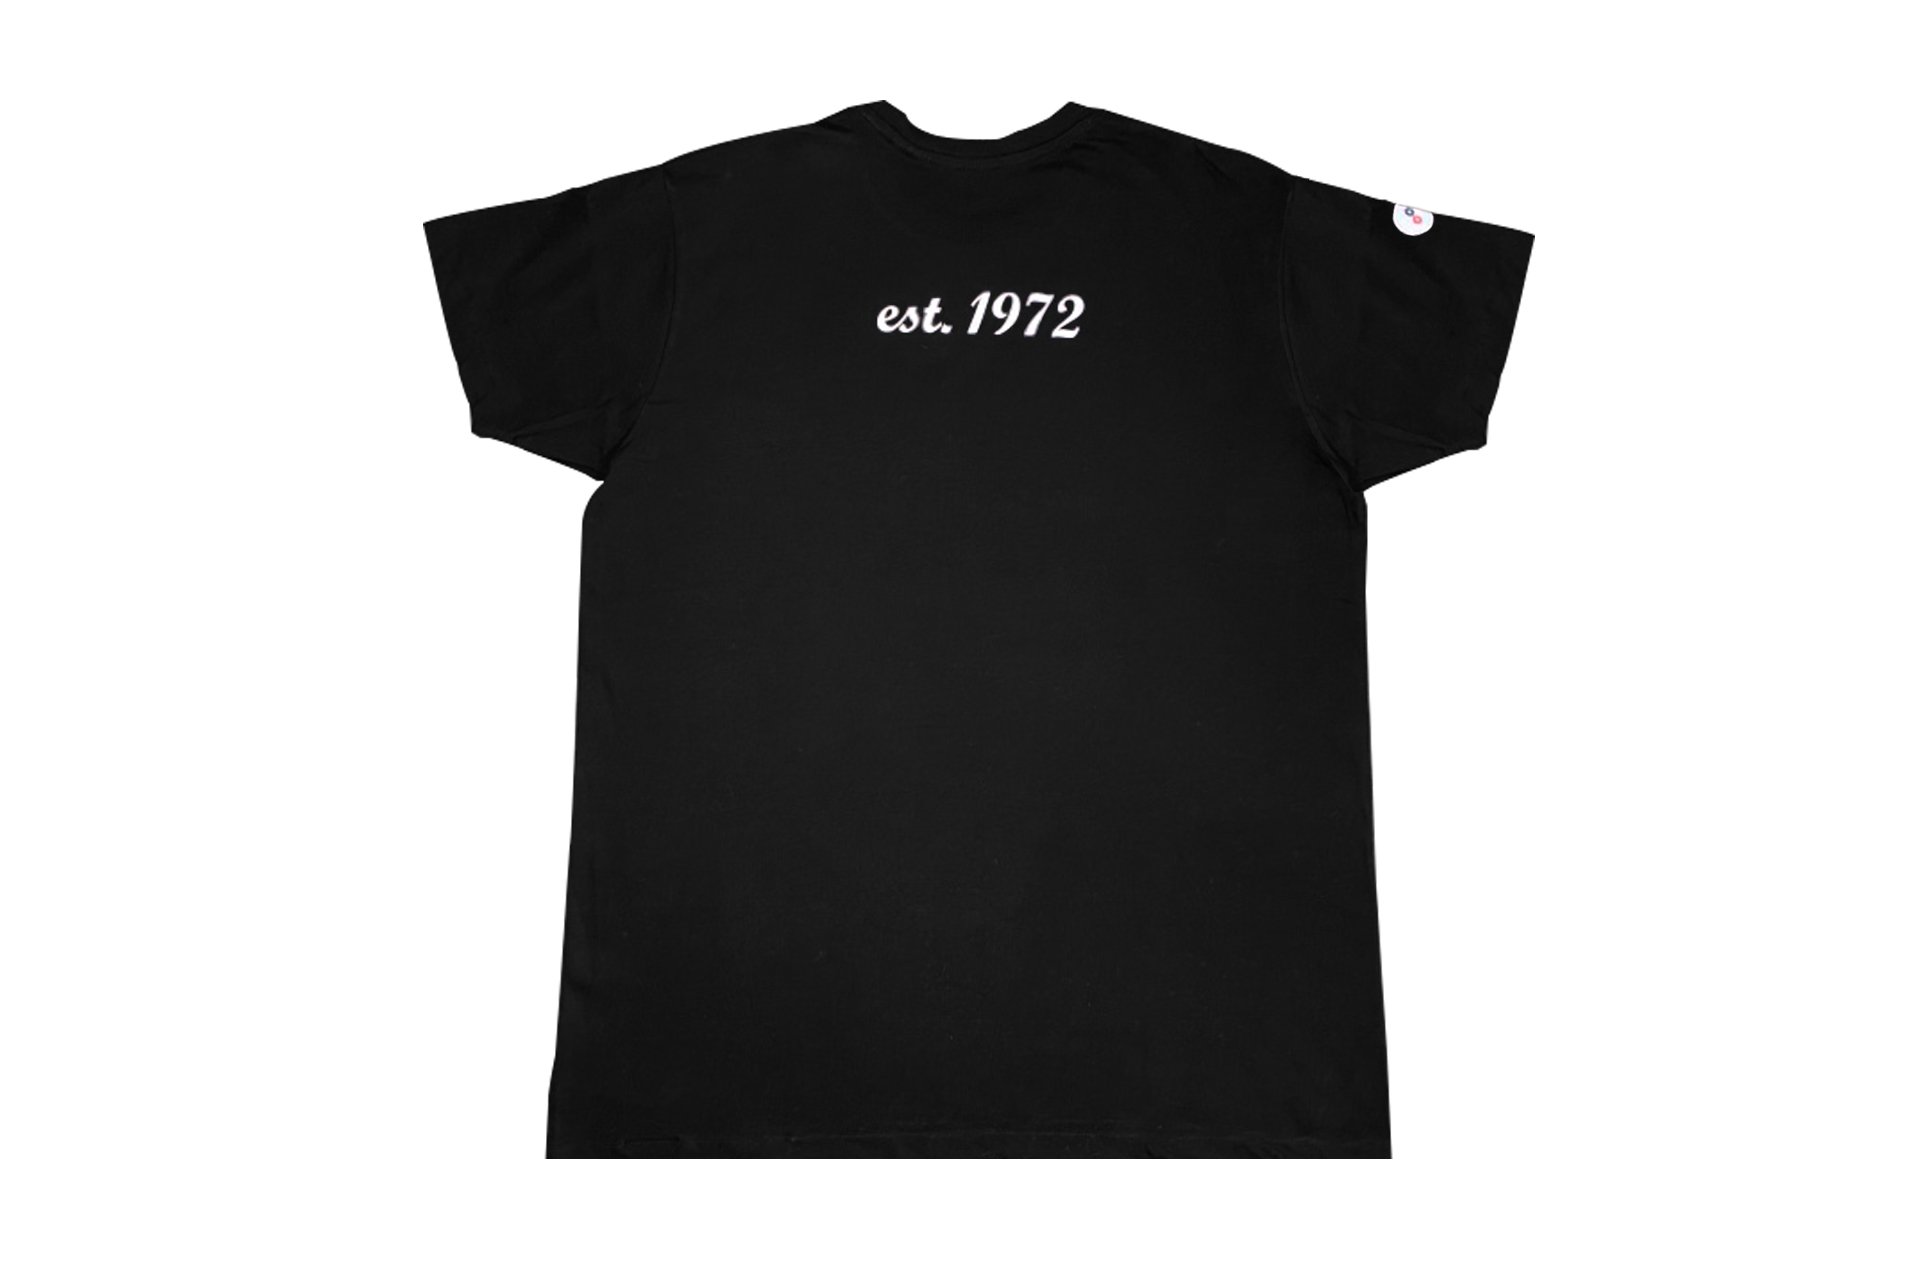 paulimot T-Shirt, schwarz, 100 % Baumwolle – L